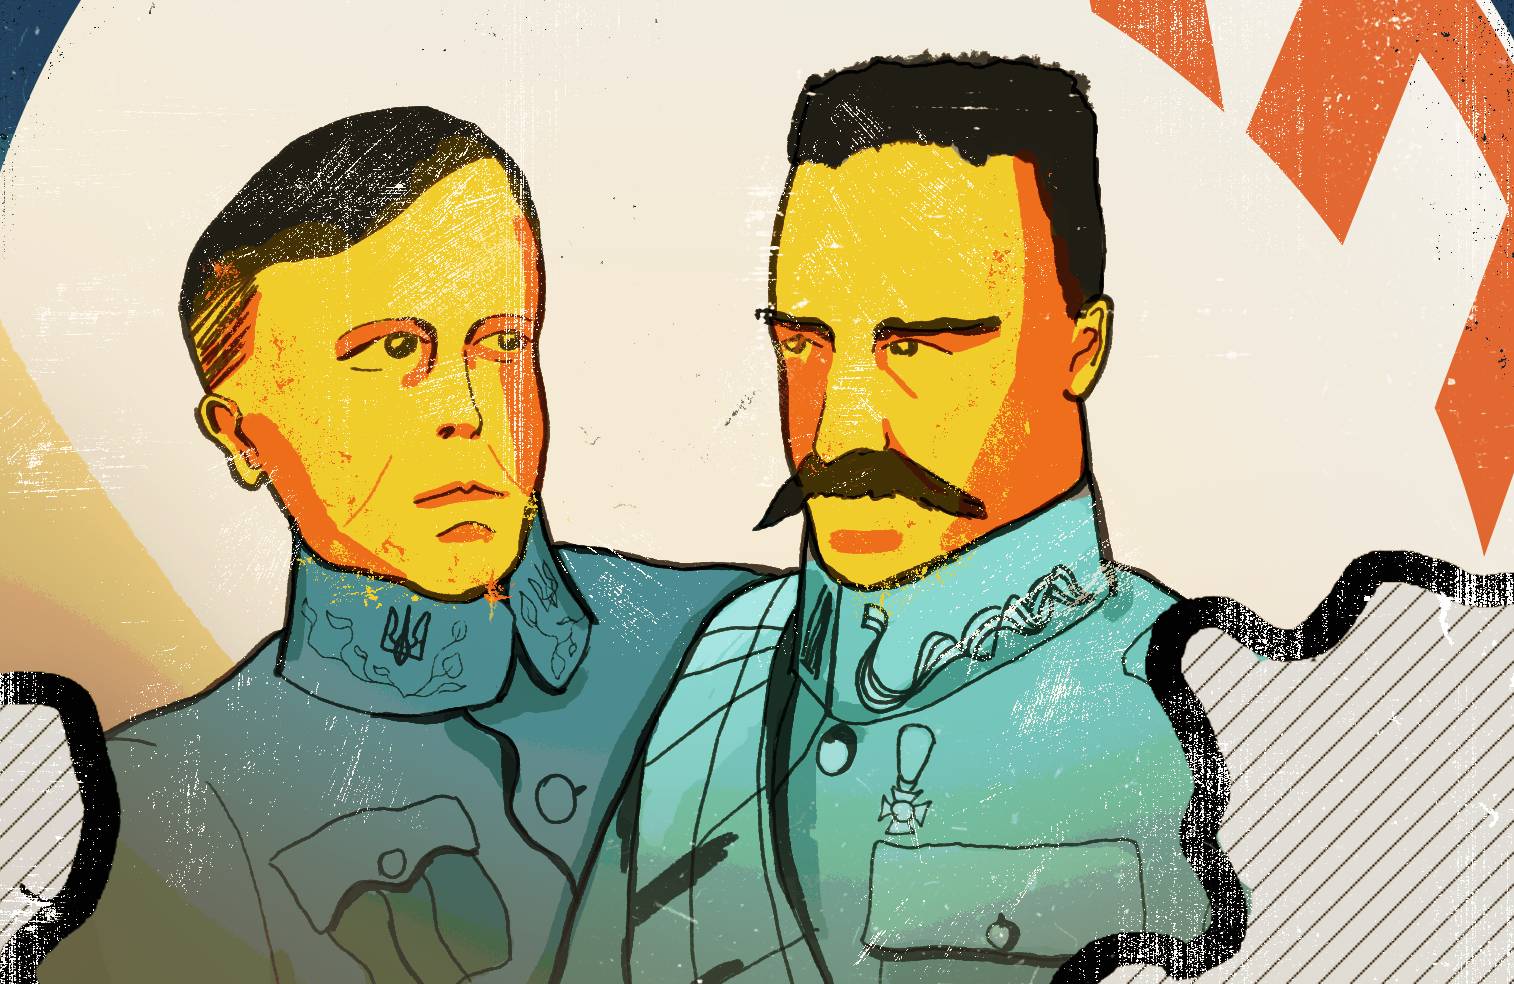 Ilustracja - obok siebie znajdują się Symon Petlura i Józef Piłsudski, obaj są w mundurach, w tle znajduje się okrąg z napisem "PKP" cyrylicą, na pierwszym planie jest kontur mapy z granicami Ukraińskiej Republiki Ludowej